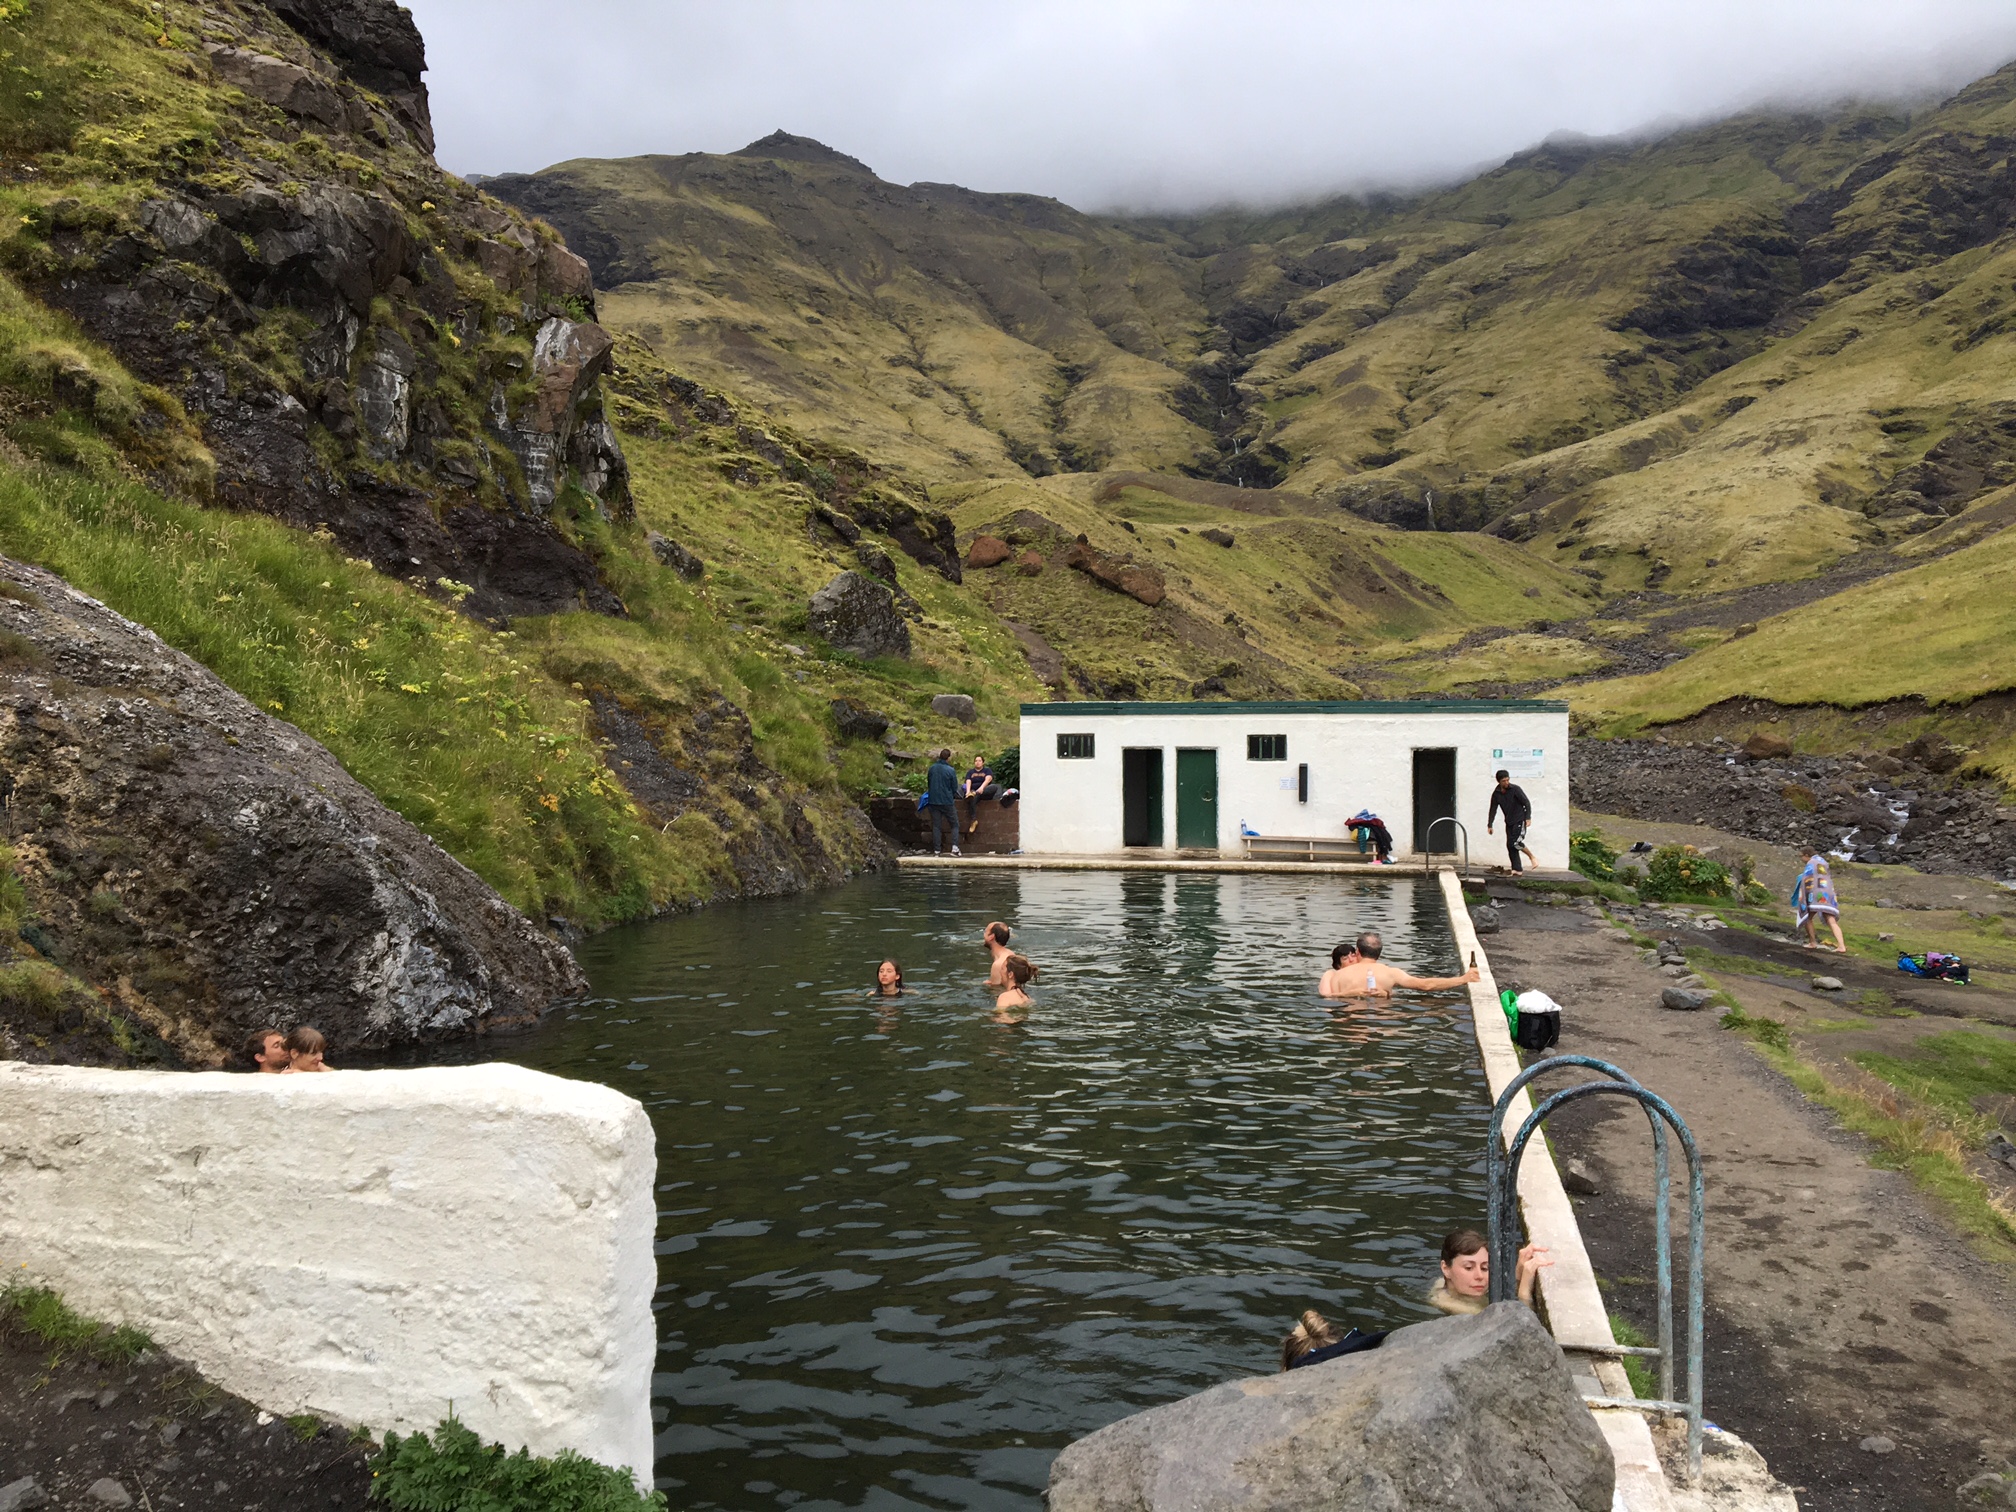 seljavallalaug-piscine-islande